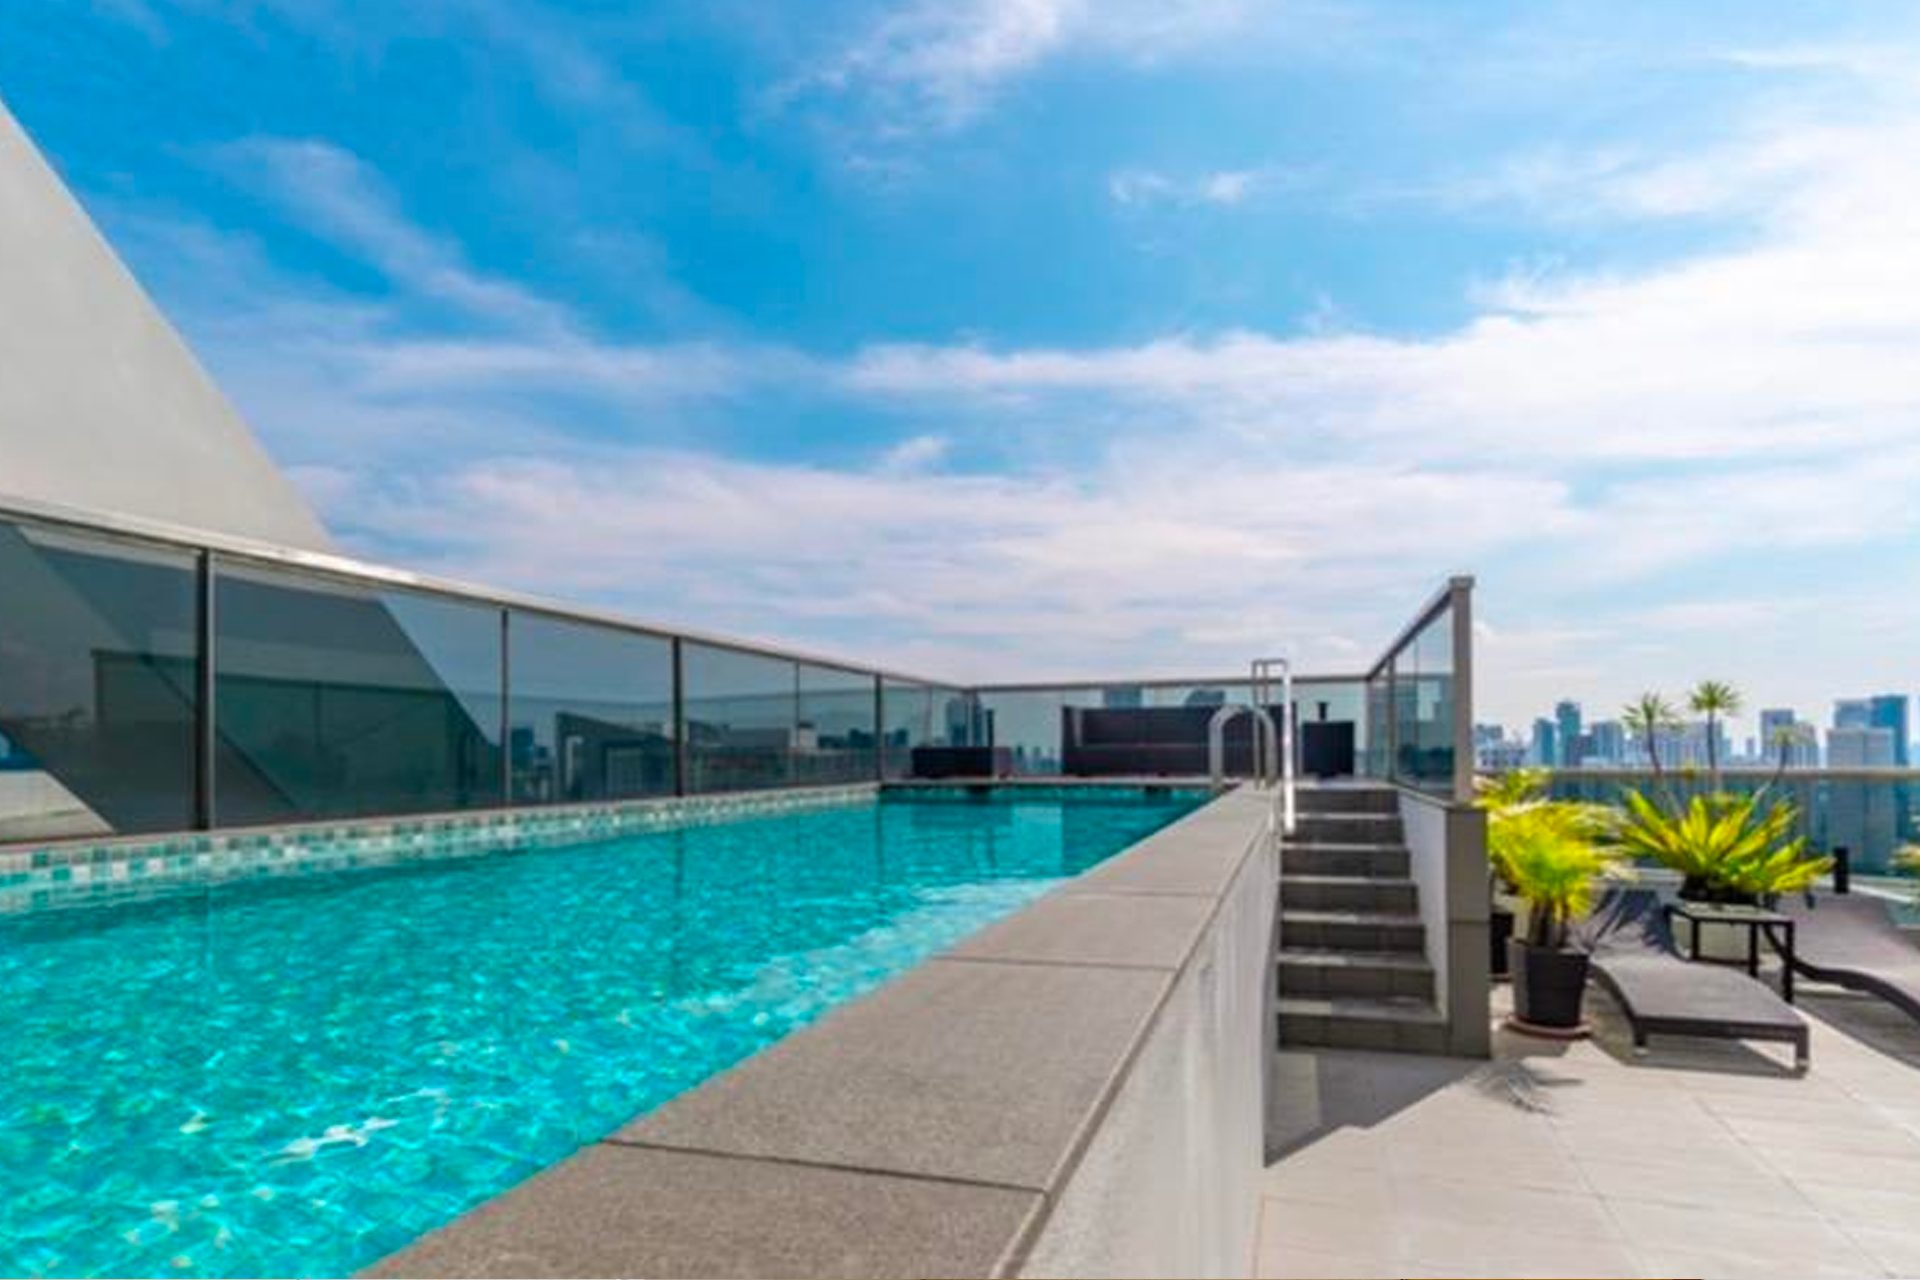 Trilight condo swimming penthouse